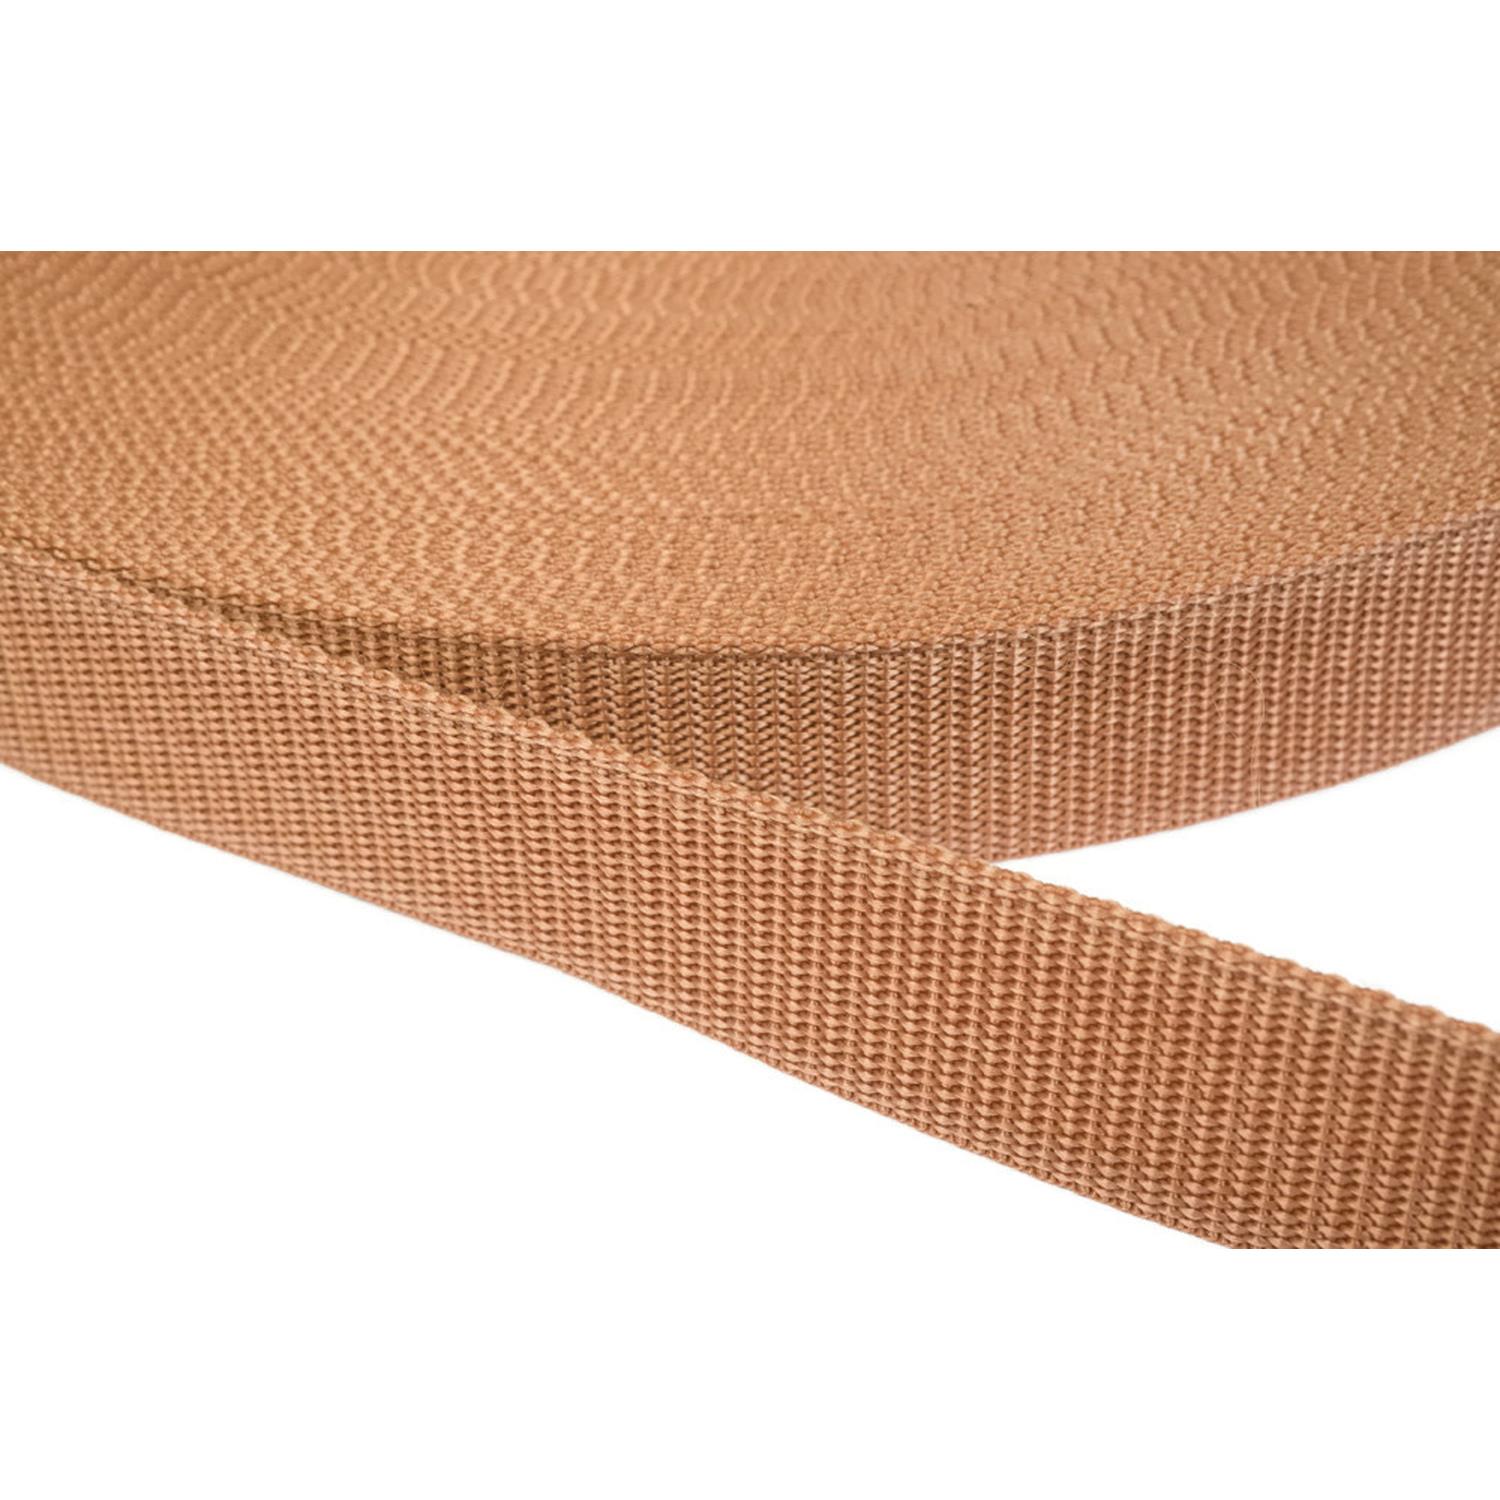 Gurtband 20mm breit aus Polypropylen in 41 Farben 06 - hellbraun 06 Meter